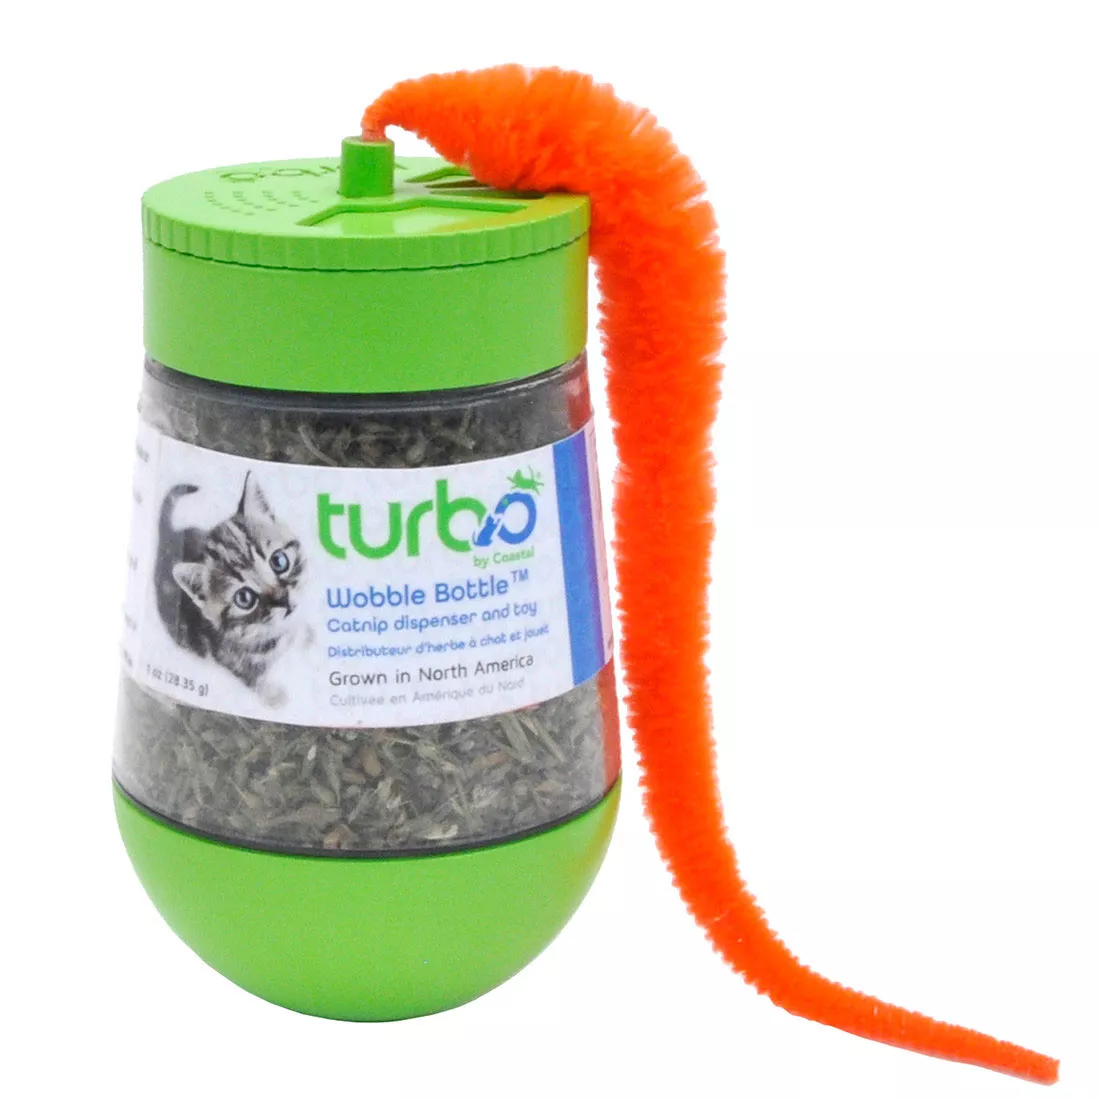 Turbo® Wobble Bottle™